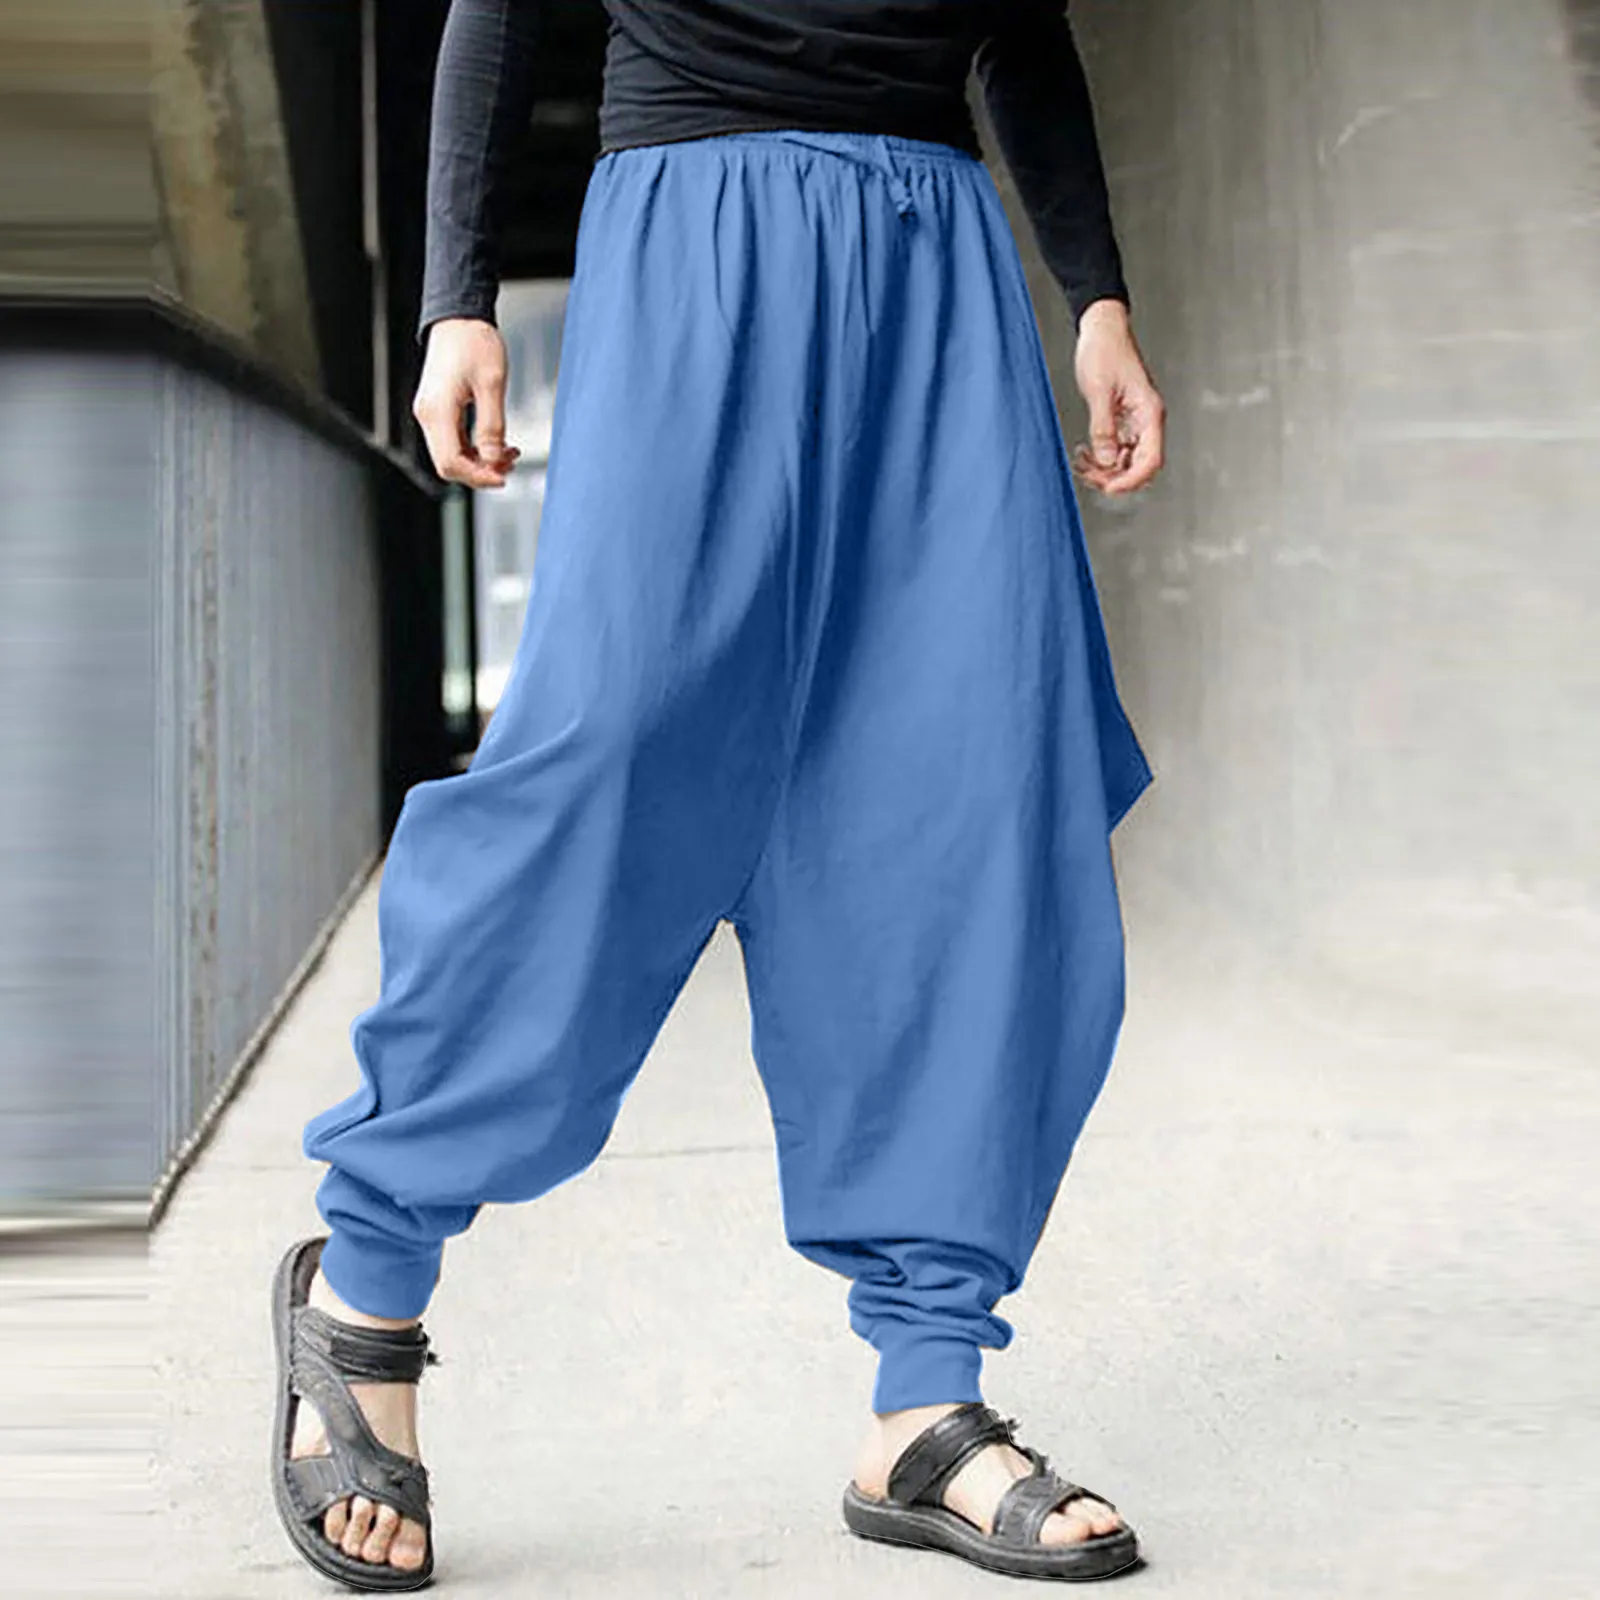 Men Korean Design Low Drop crotch Denim Jeans Harem hip hop Long pants  Slack baggy Plus Big Size pants Stretch trousers Grey on OnBuy